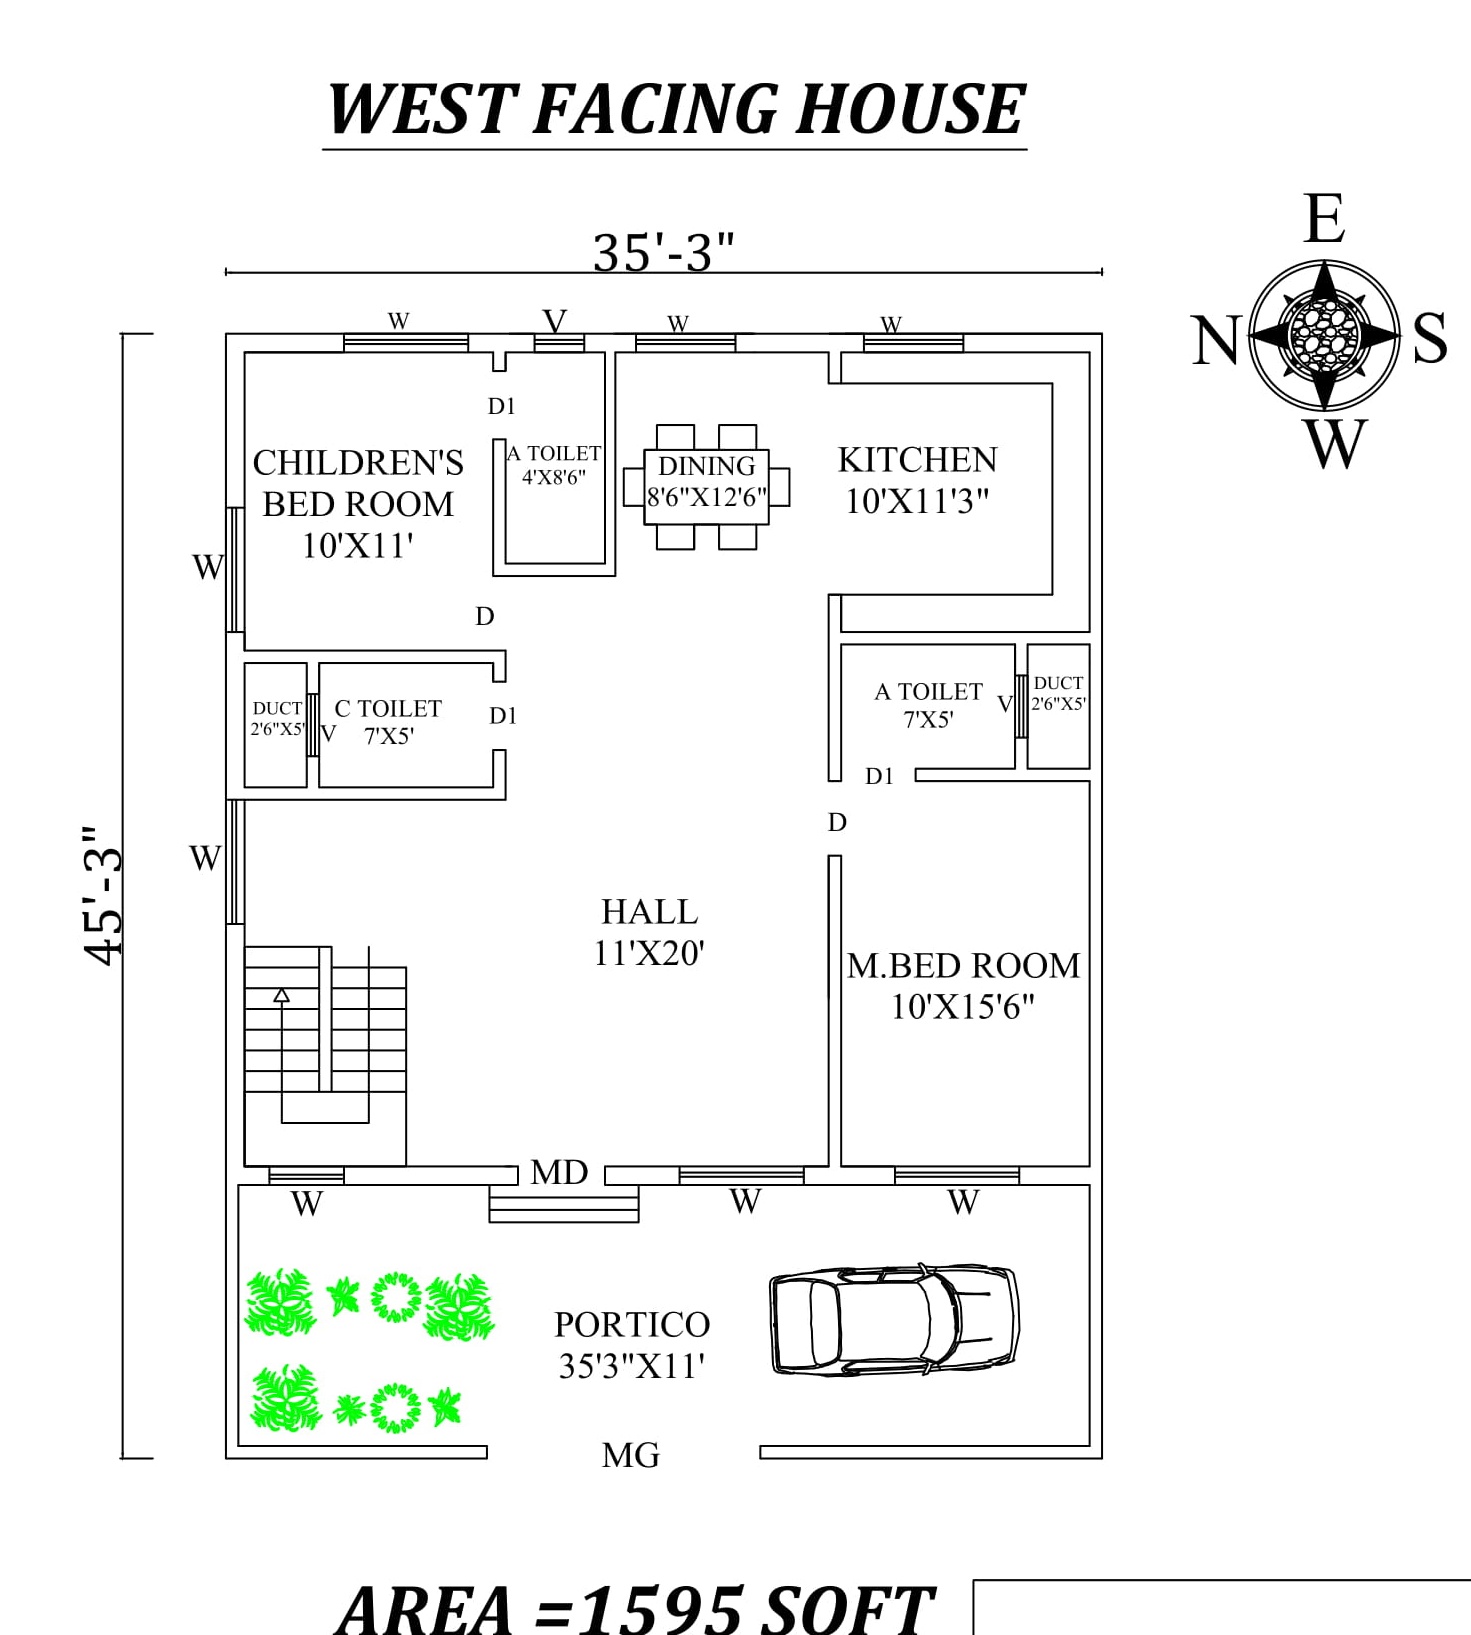 35'X45' Marvelous 2bhk West facing House Plan As Per Vastu